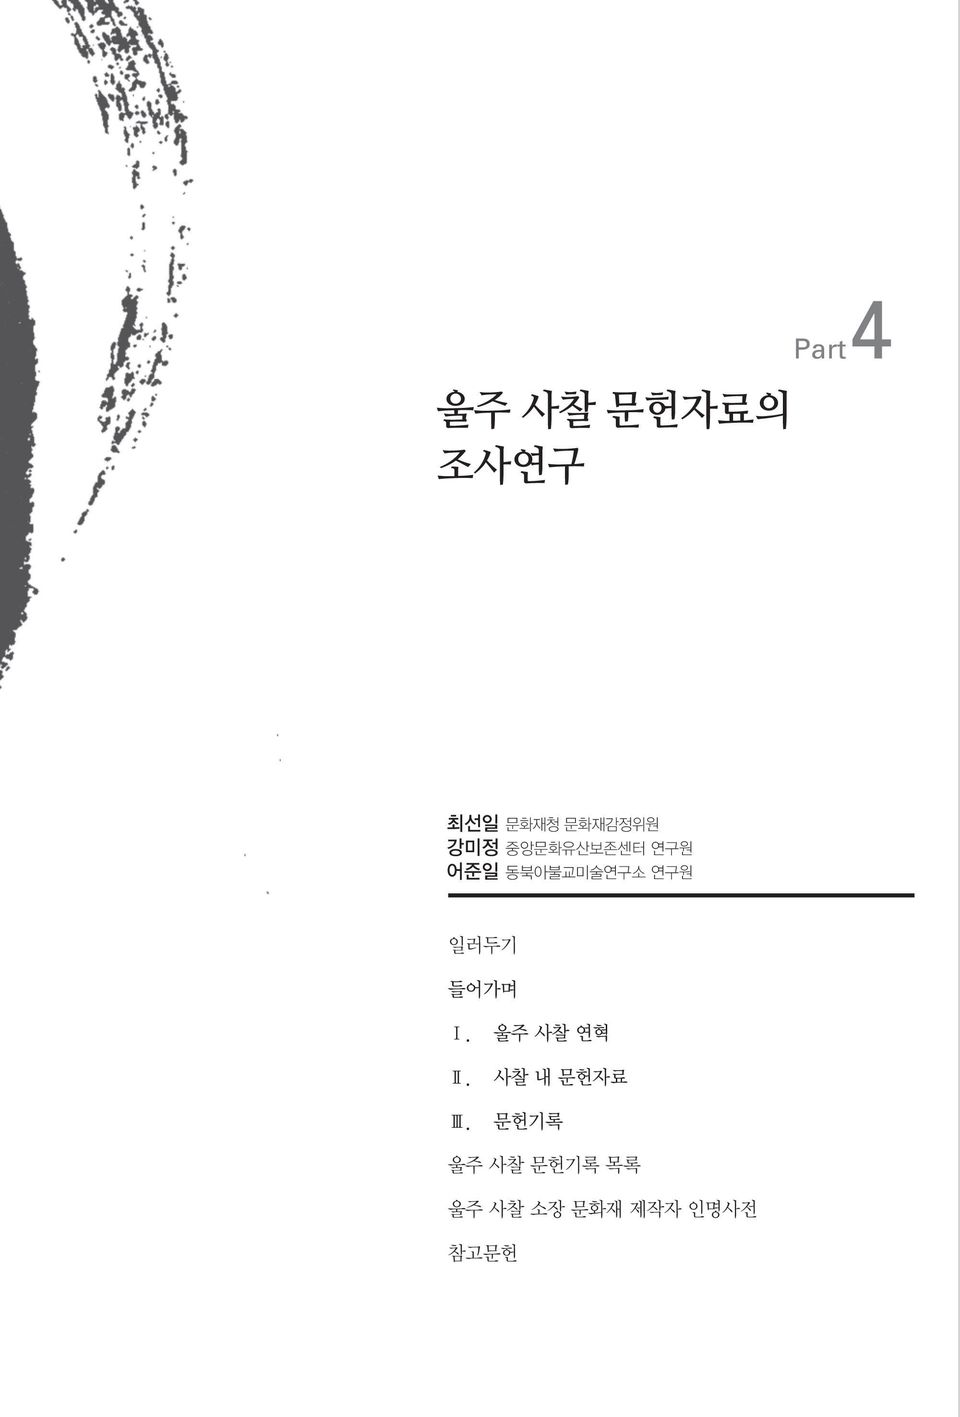 일러두기 들어가며 Ⅰ. 울주 사찰 연혁 Ⅱ. 사찰 내 문헌자료 Ⅲ.